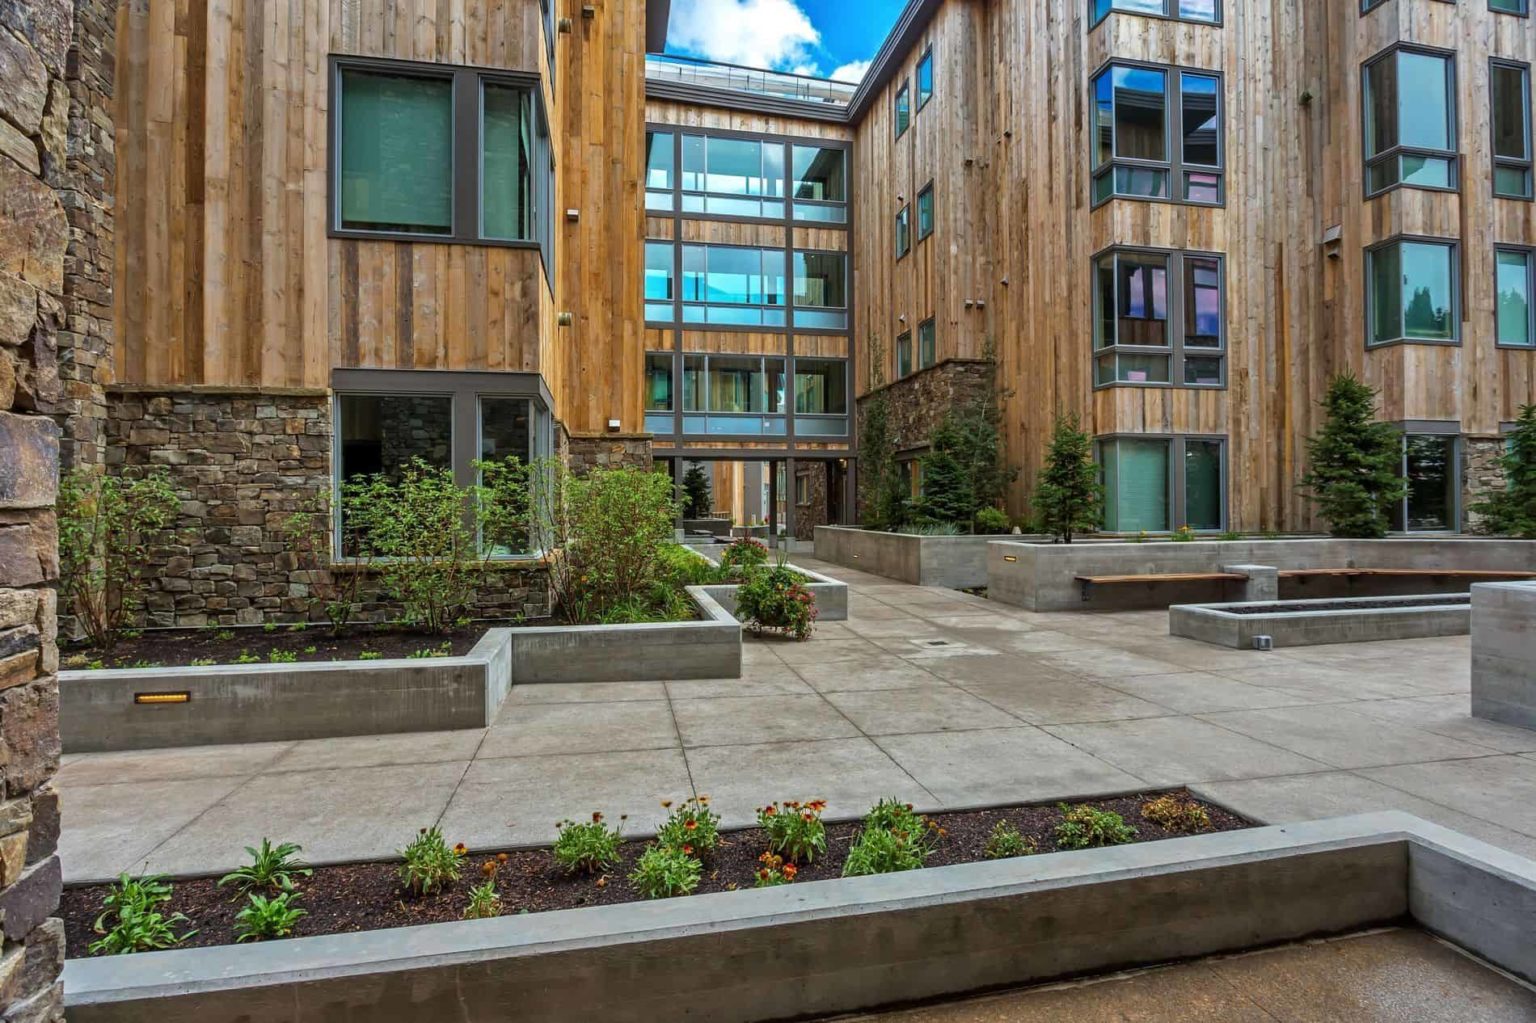 Stein Eriksen Residences exterior garden with planters